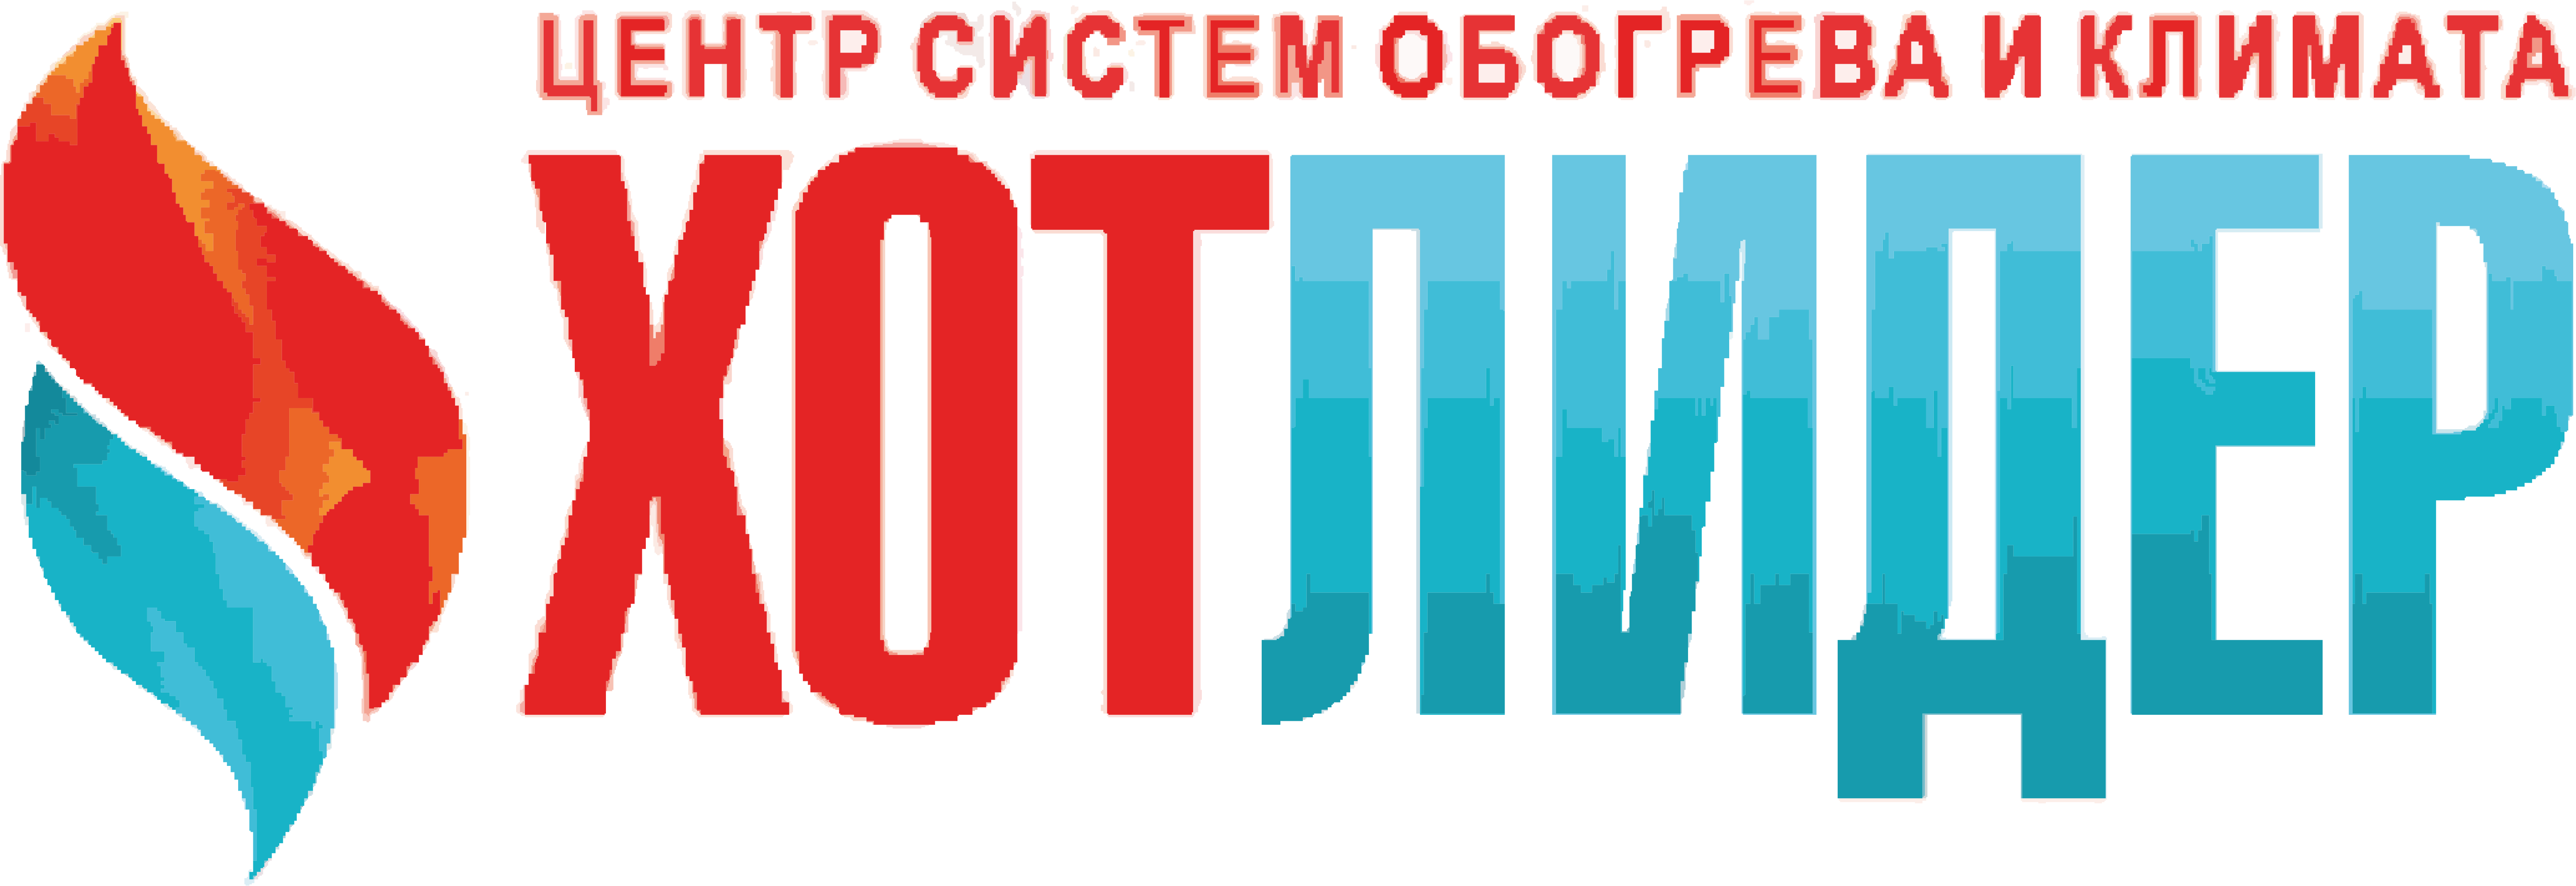 ООО ХотЛидер Логотип(logo)